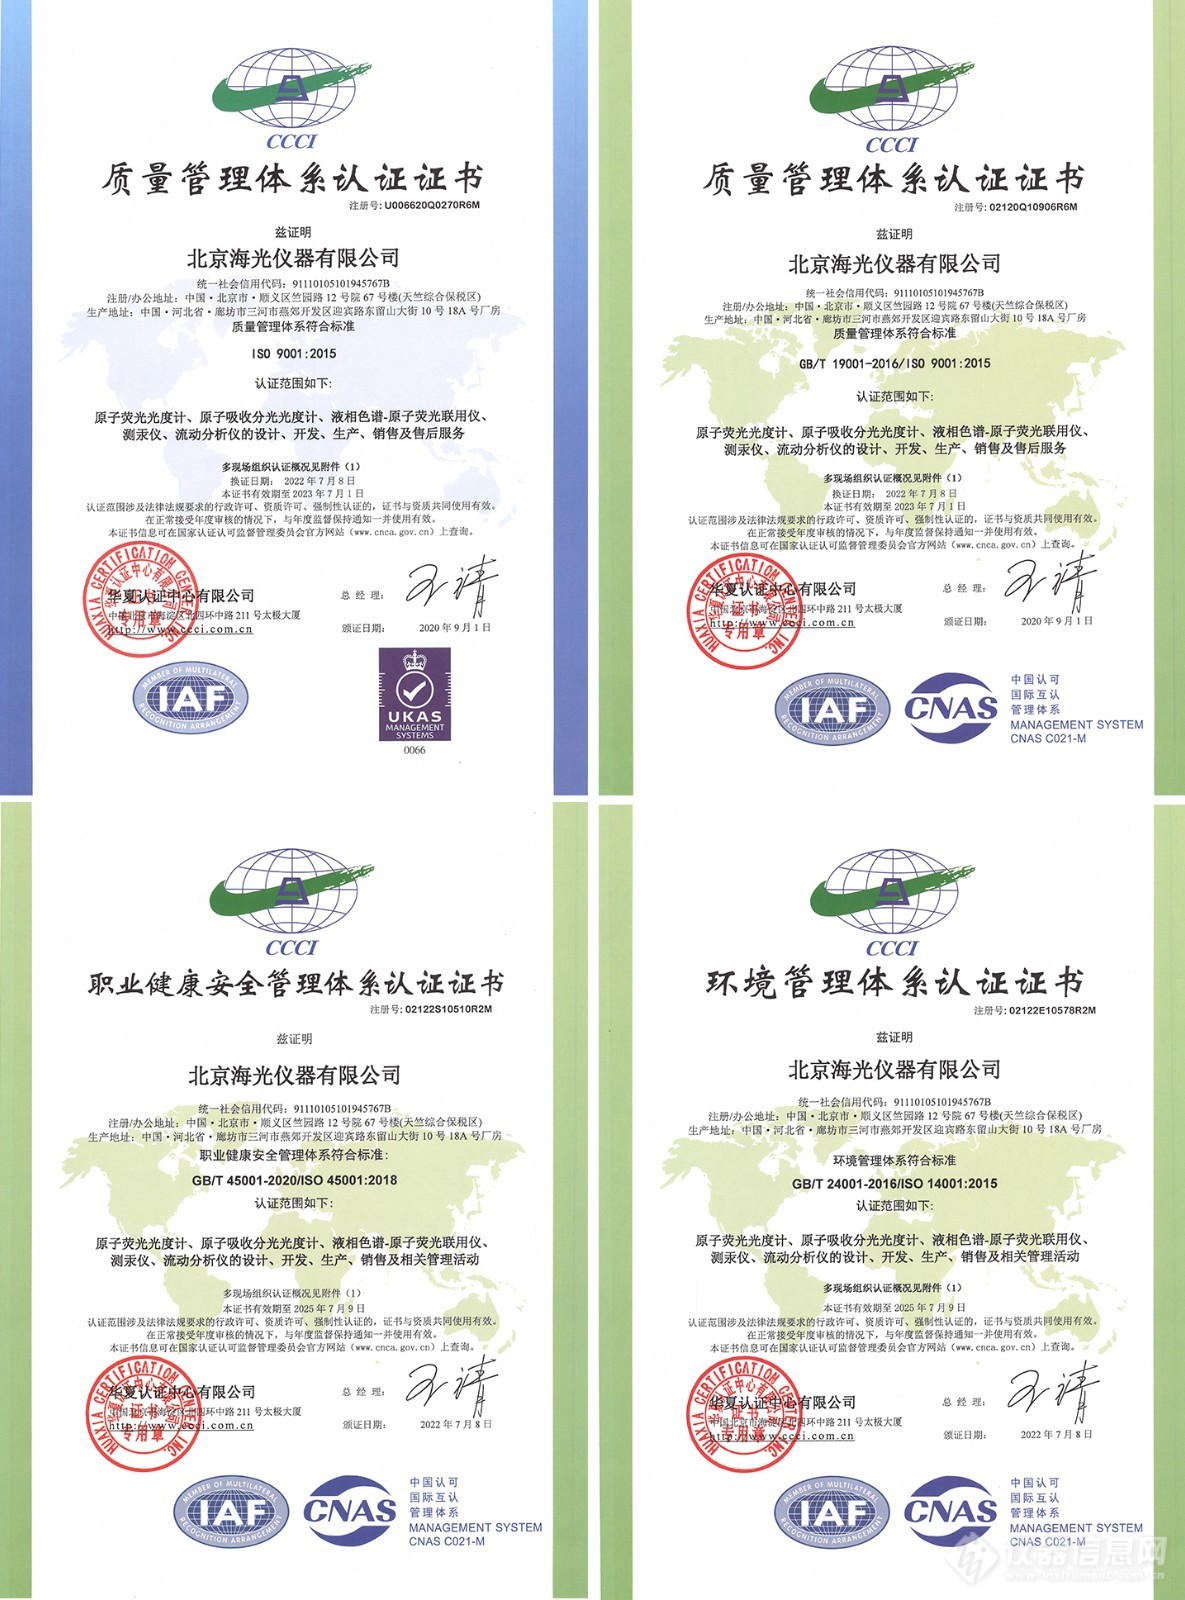 北京海光仪器有限公司通过质量管理体系换证审核